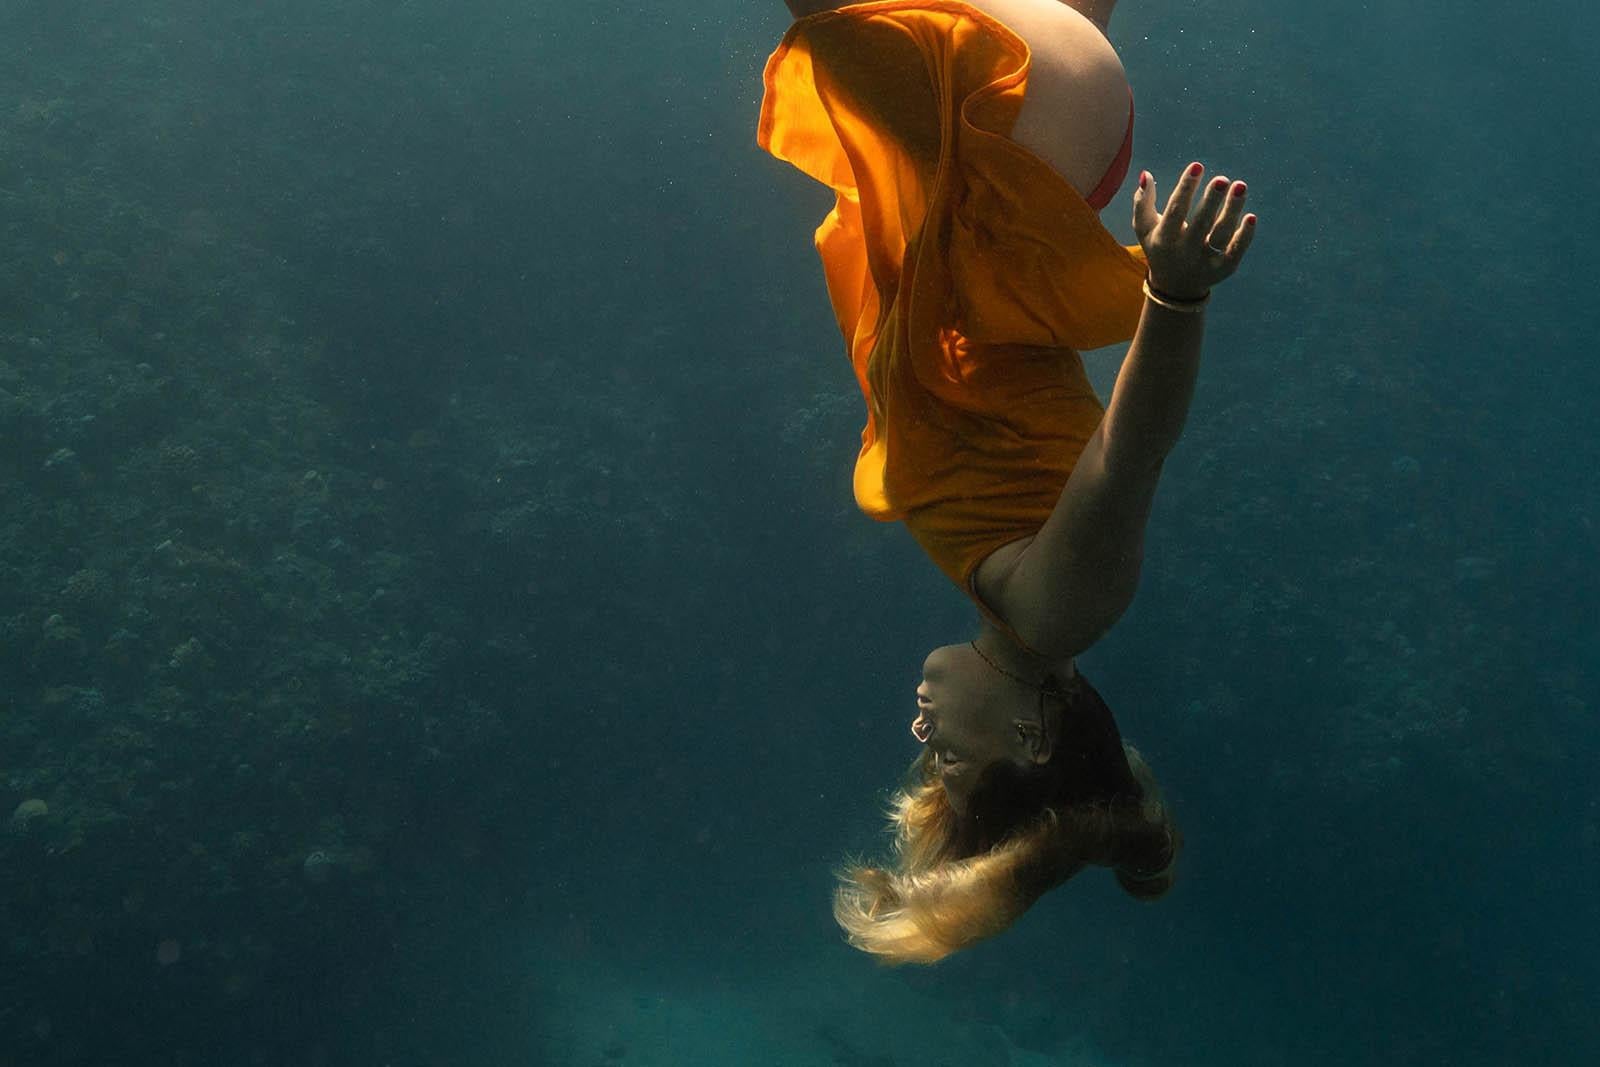 Grande photo en couleur « Synchronised swimming in the Blue » (Plonger dans le bleu) - Impression d'art - Photograph de Olivier Borde